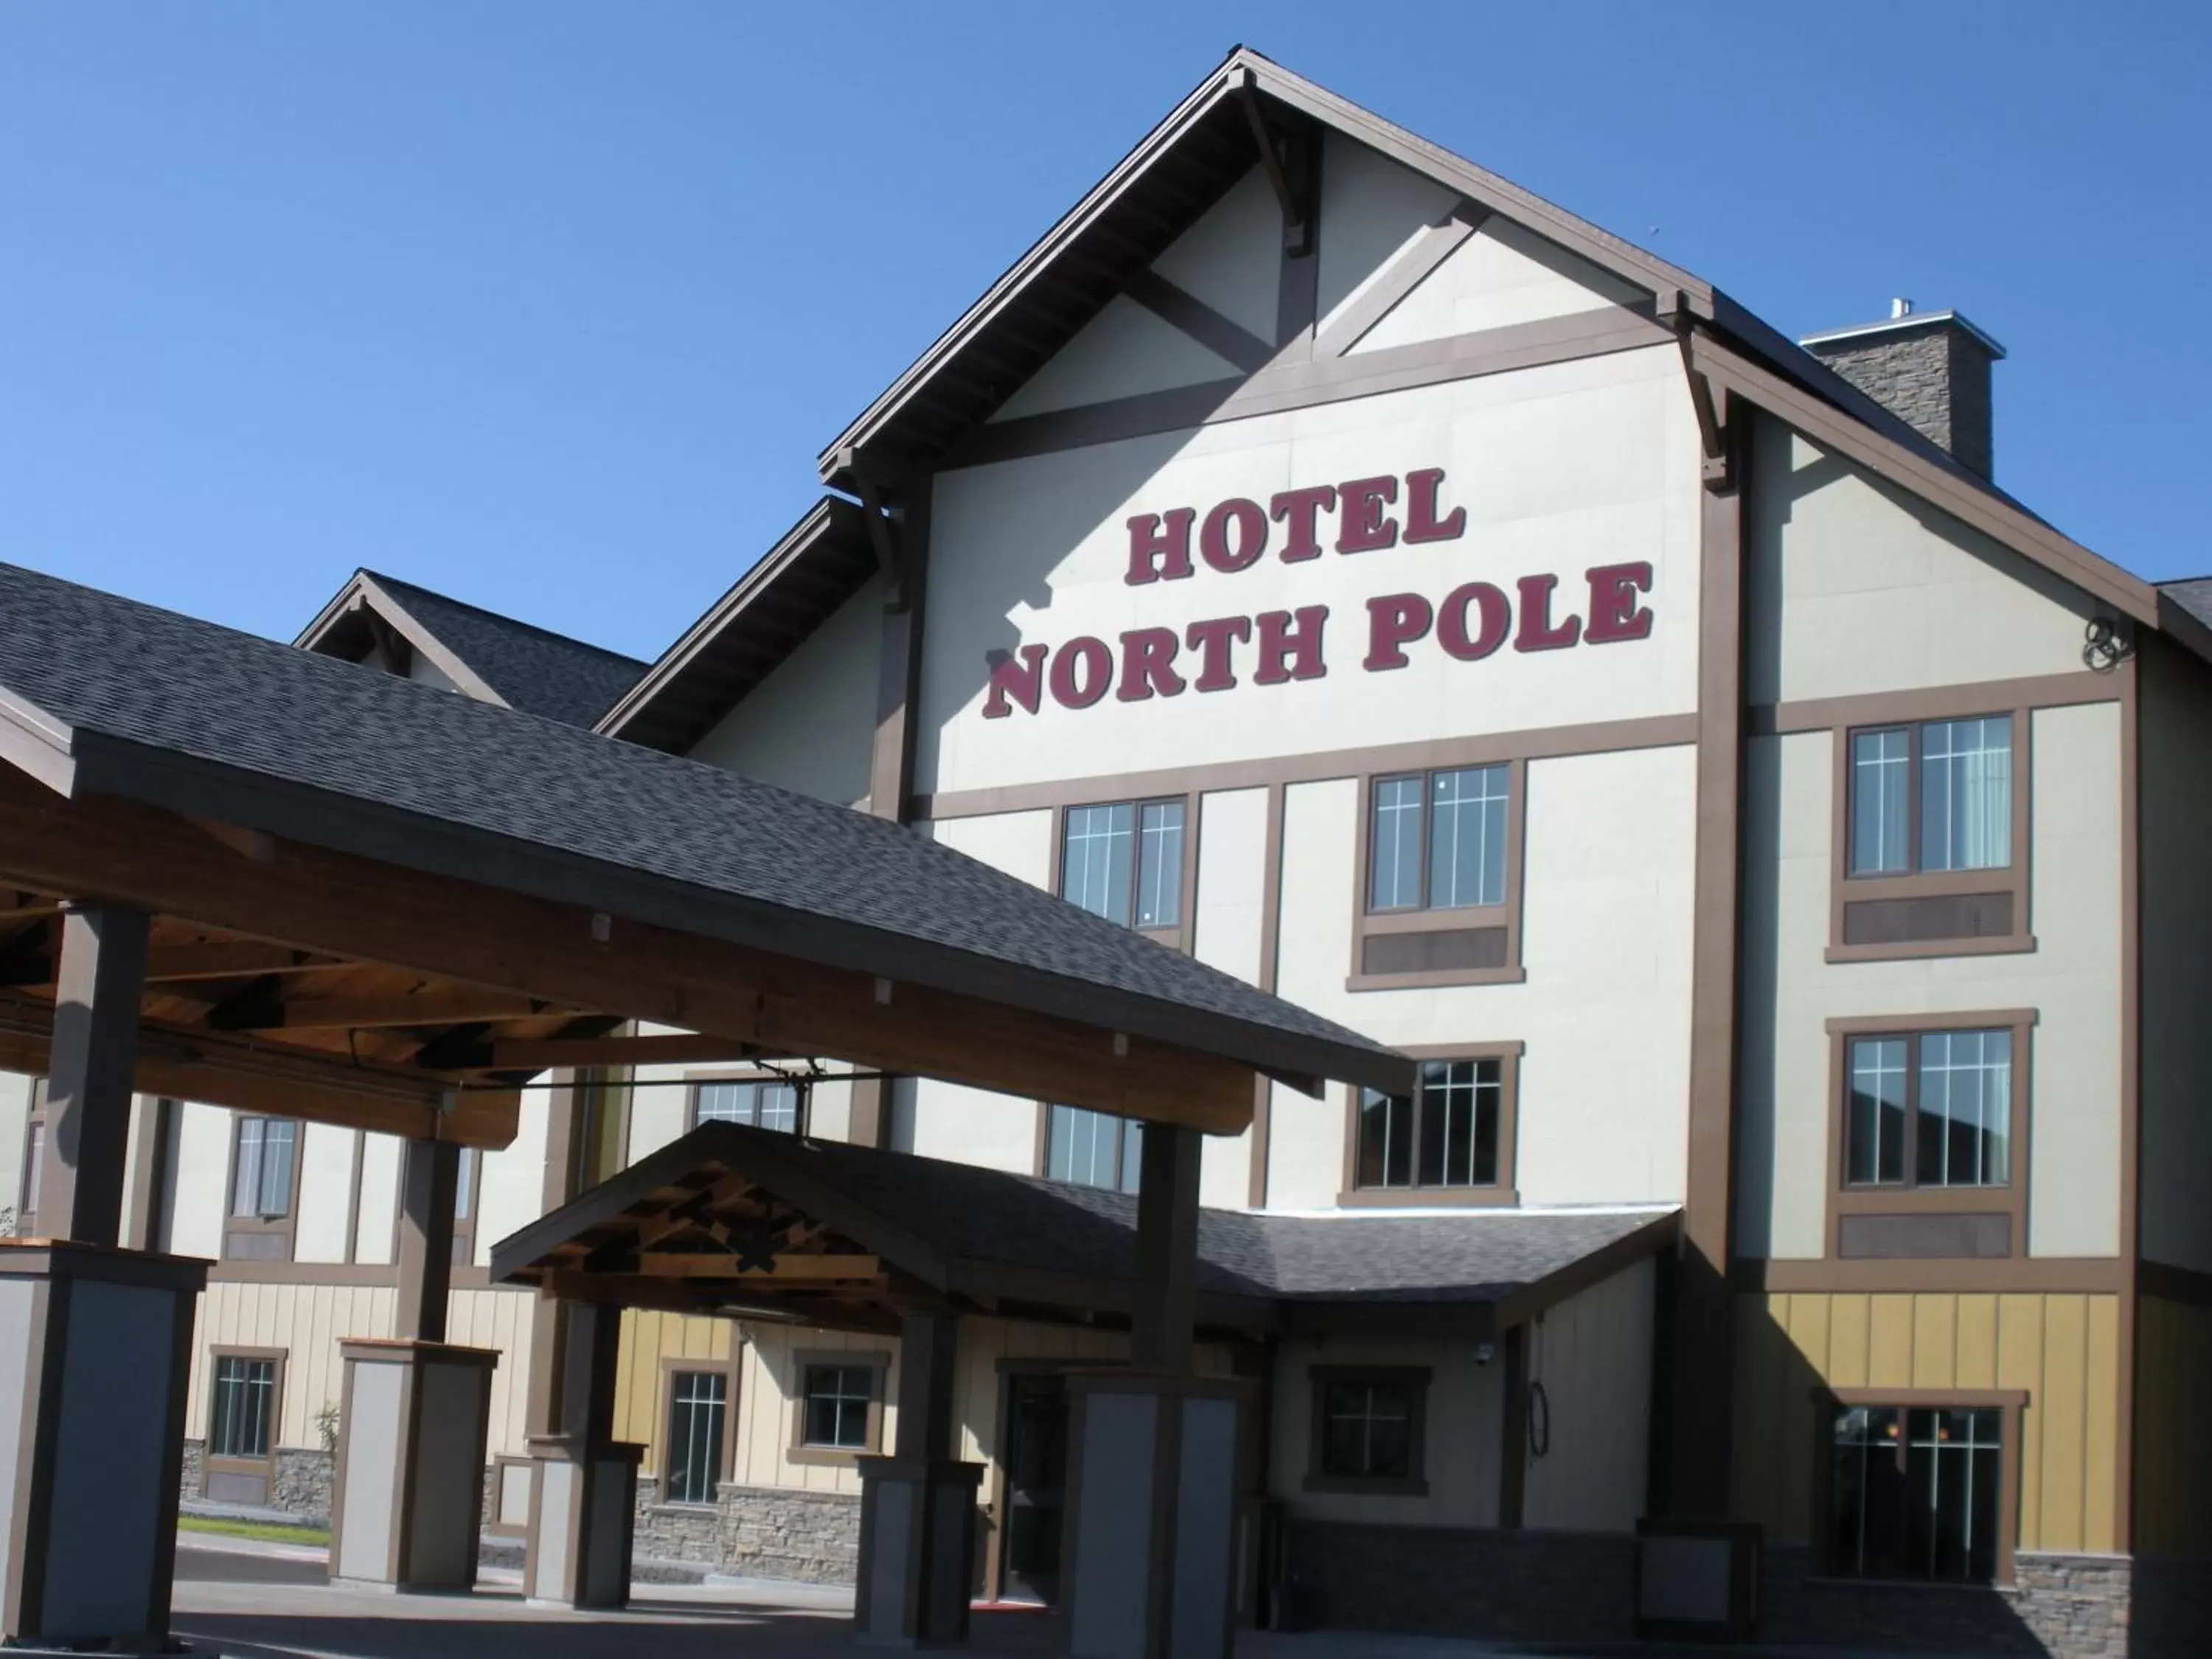 Facade/entrance in Hotel North Pole